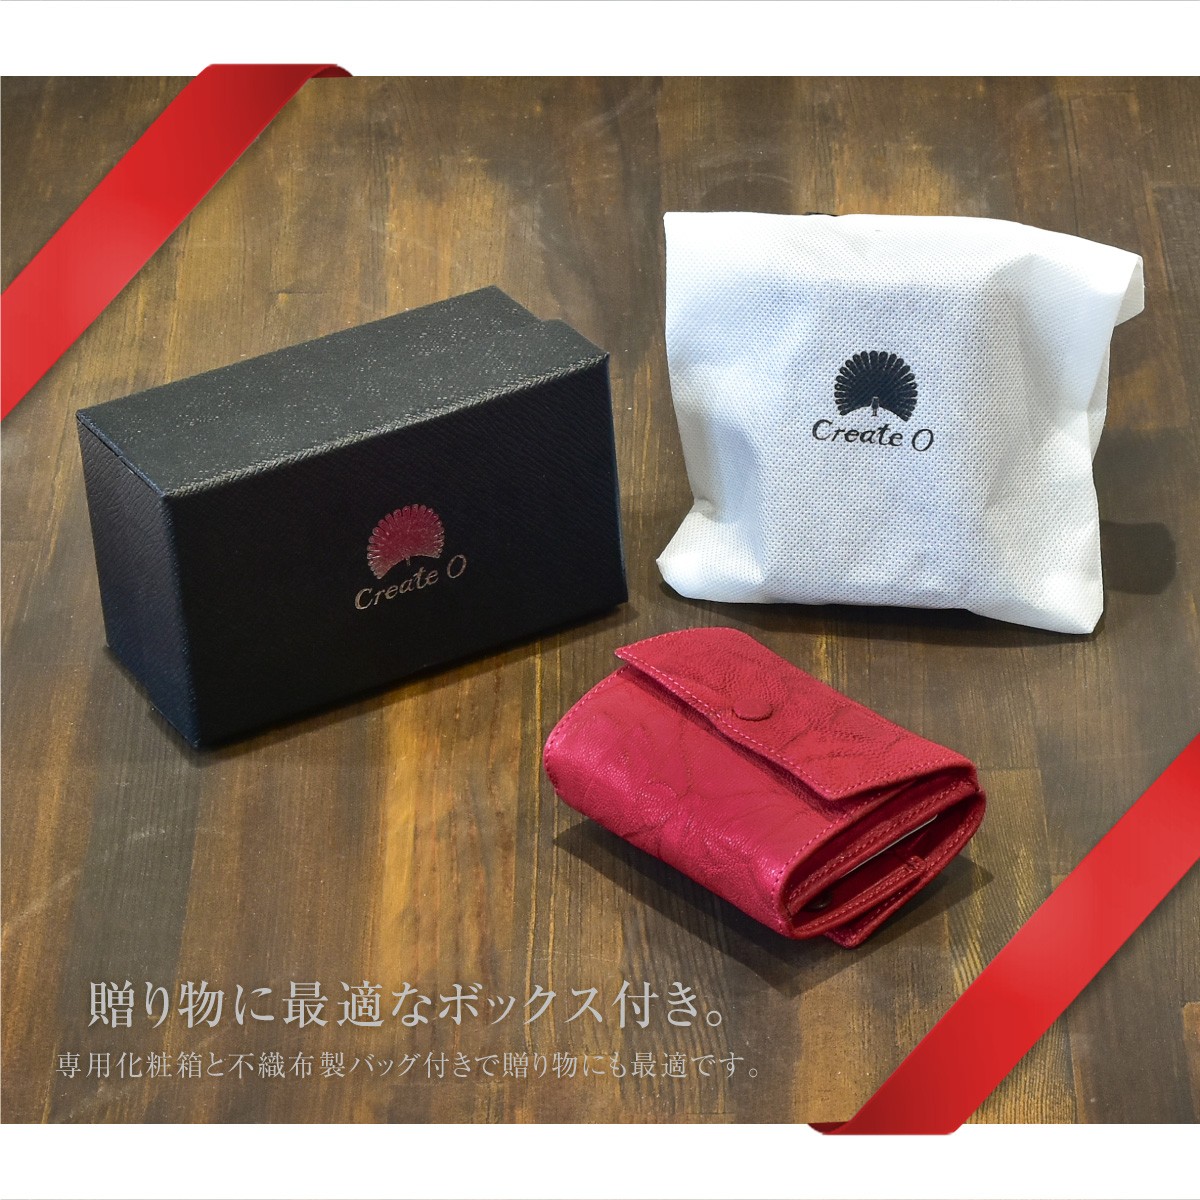 三つ折り財布 レディース メンズ コンパクト ボックス型 多機能 本革 山羊革 ブランド create-zero シワ加工 ゴートレザー